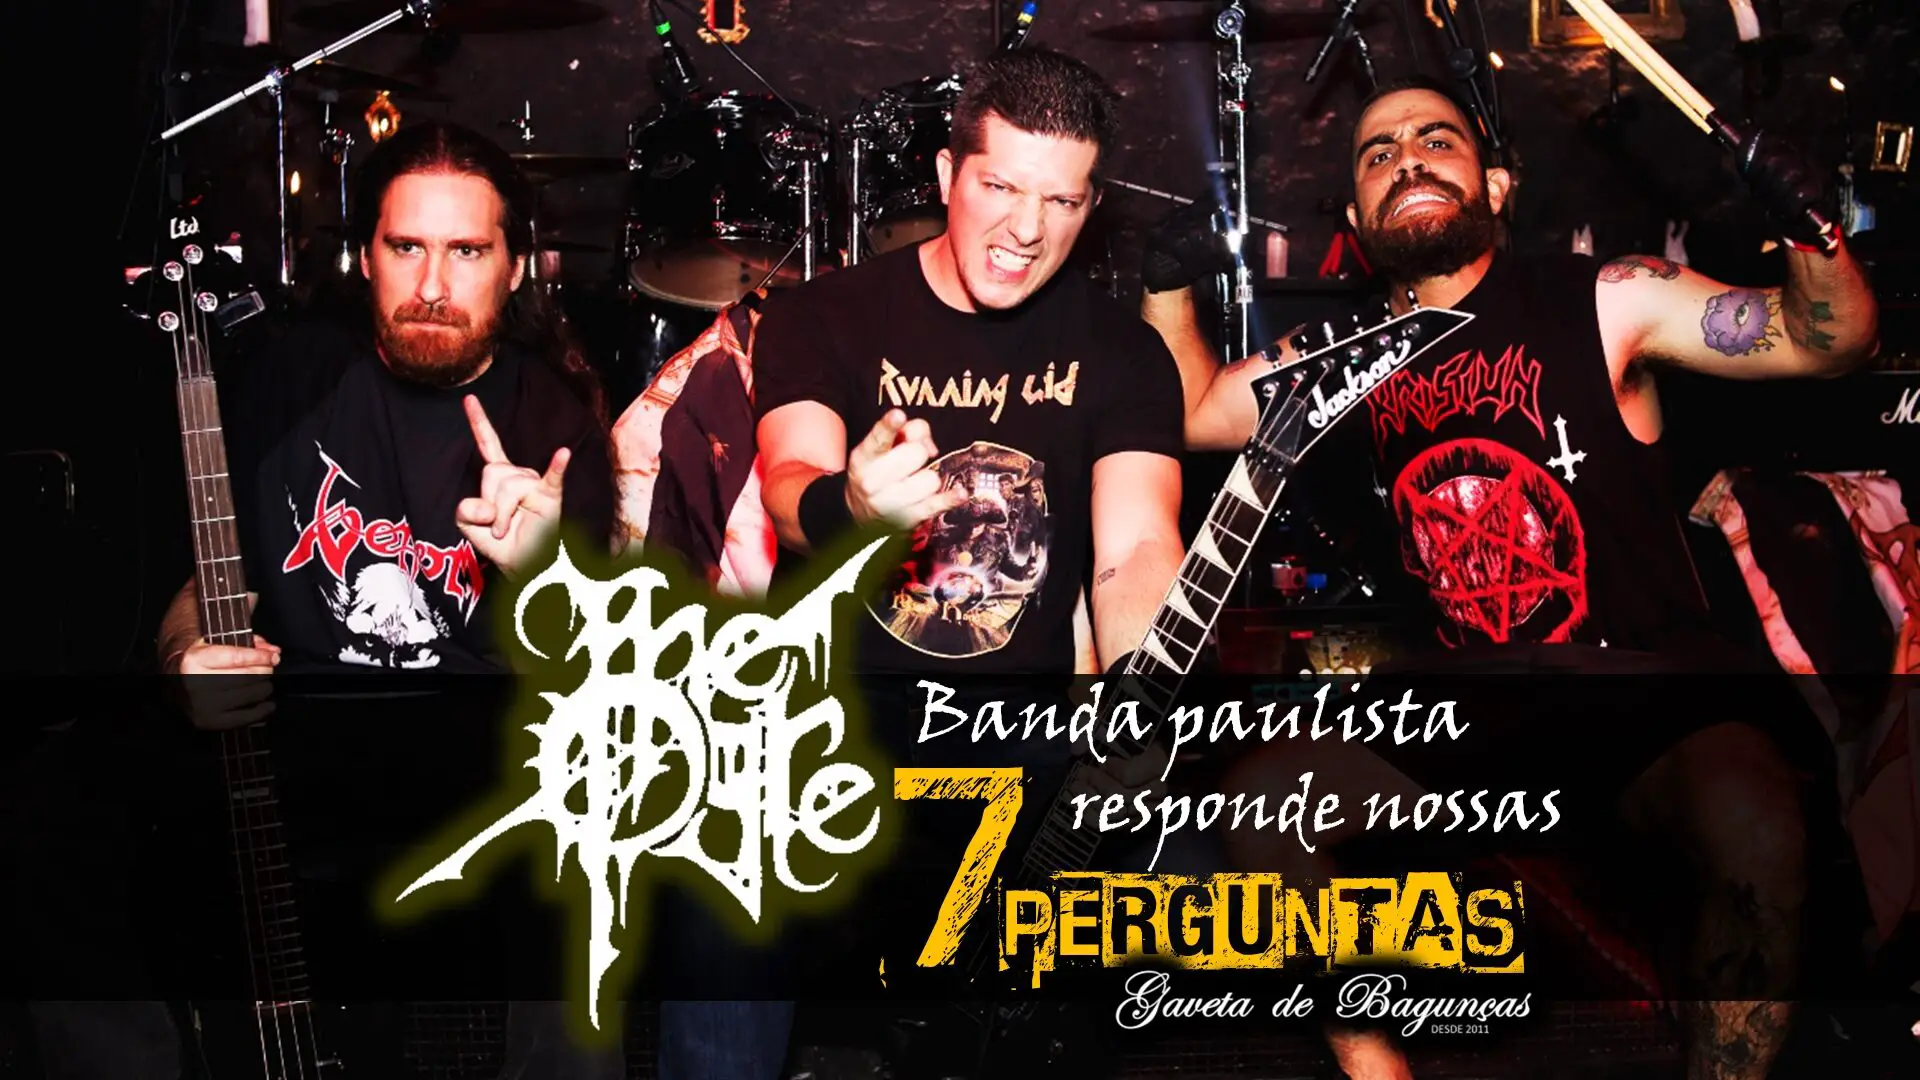 The Ogre é uma one-man-band do multi-instrumentista Diogo Marins, devotada ao death metal fundada em 2010 na capital paulista.